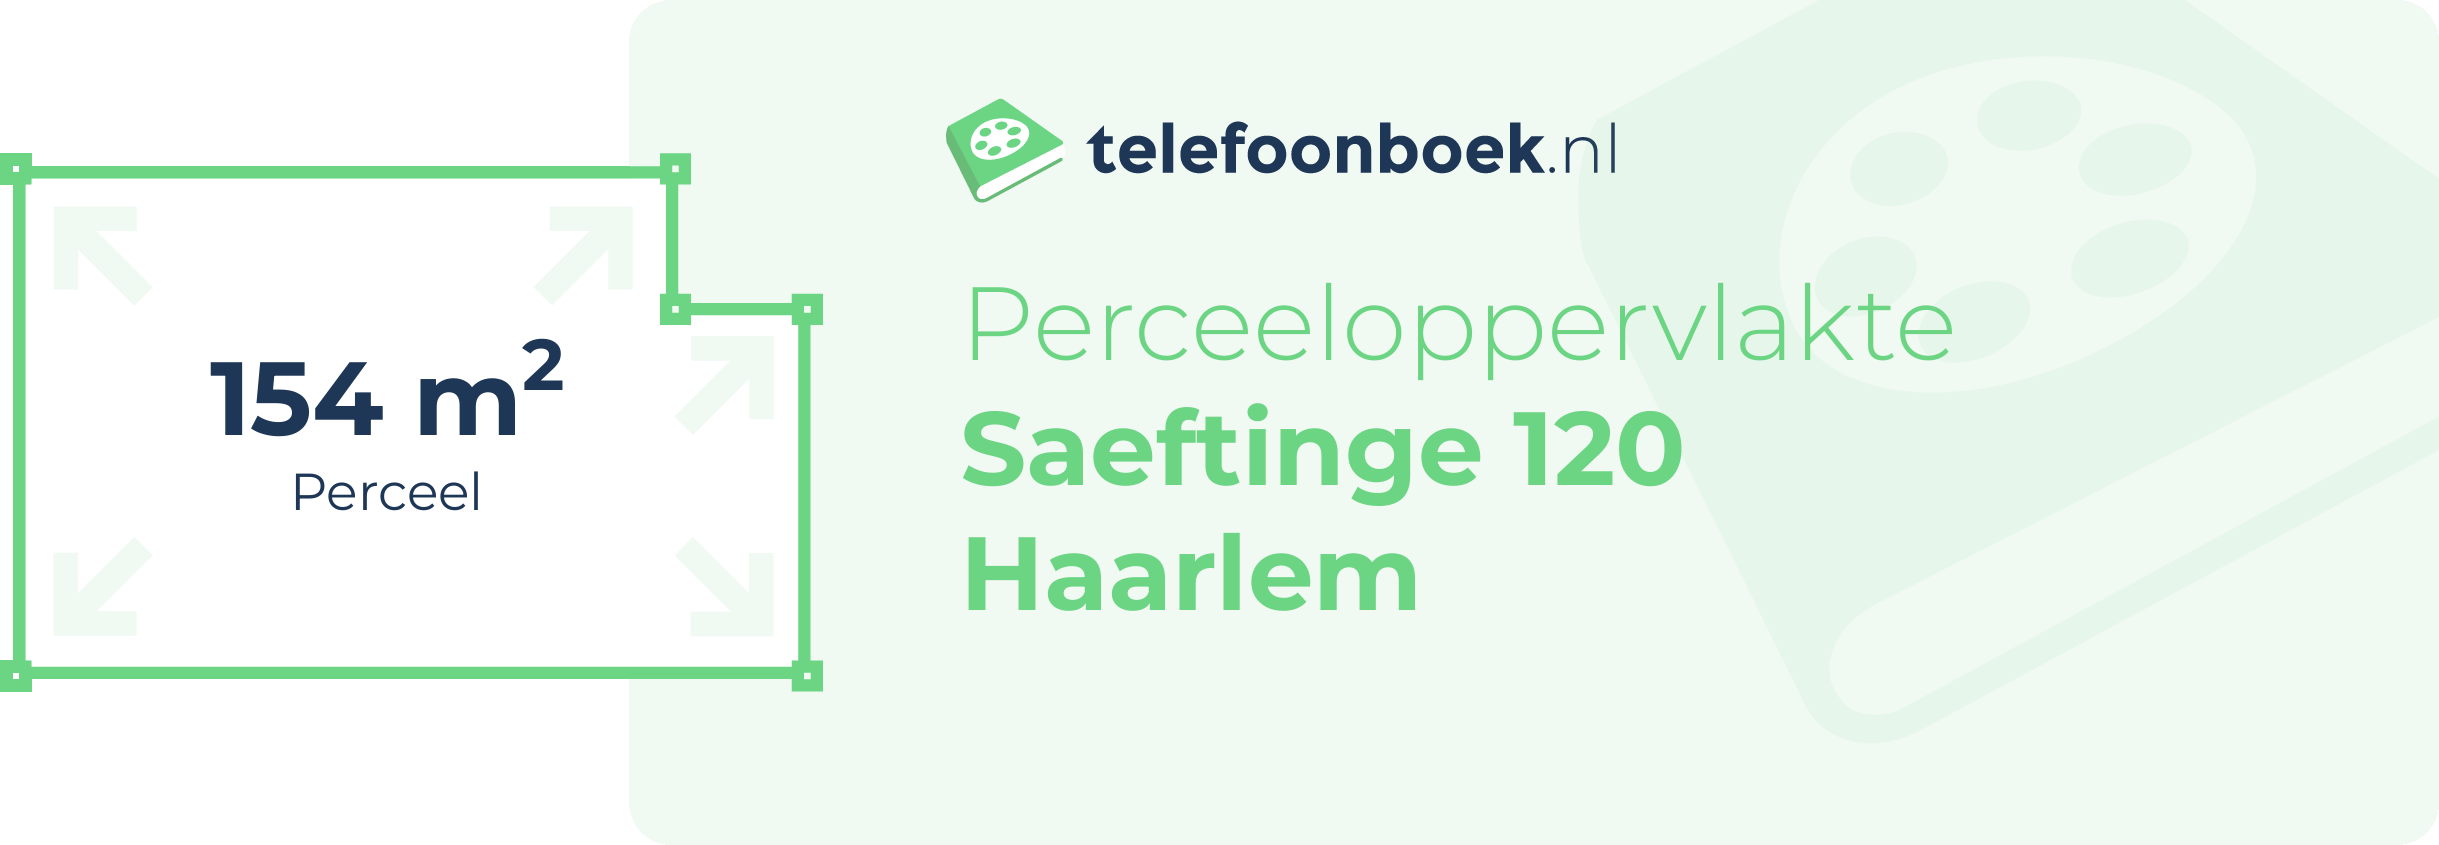 Perceeloppervlakte Saeftinge 120 Haarlem